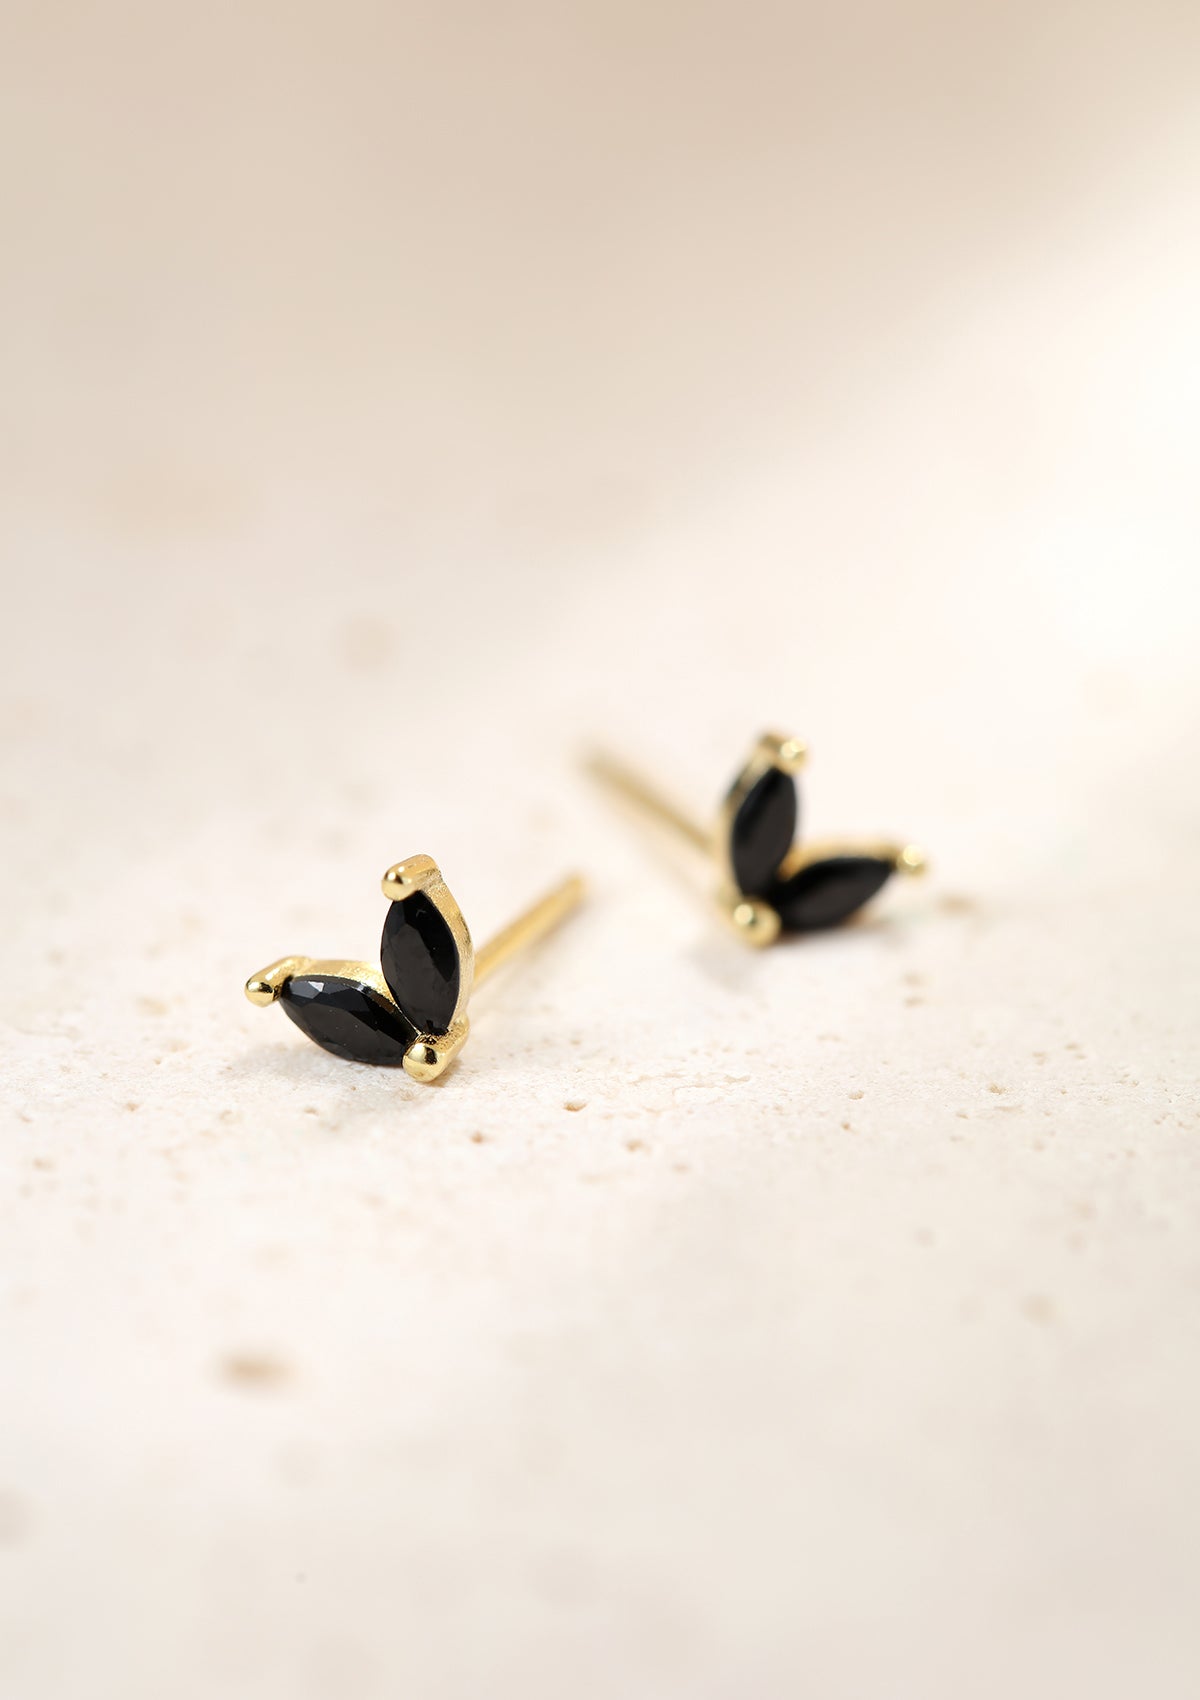 Black Gemstone Firefly Stud Earrings Sterling Silver Gold